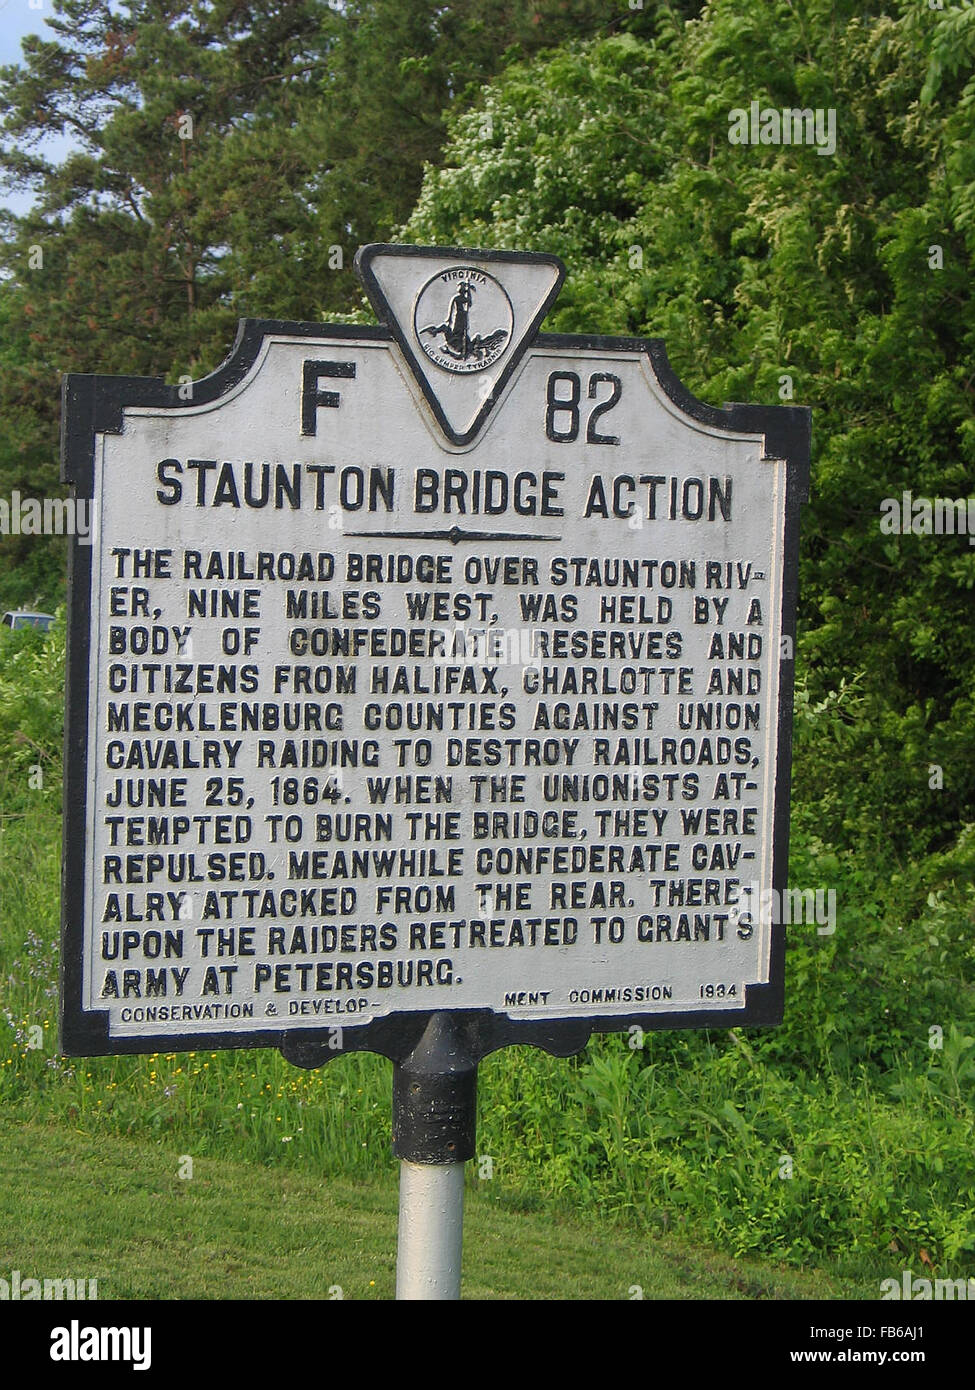 STAUNTON ACTION Pont Le pont ferroviaire qui traverse la rivière Staunton, neuf milles à l'ouest, s'est tenue par un organe de la Confédération se réserve et les citoyens d'Halifax, les comtés de Charlotte et Mecklembourg contre les raids de cavalerie de l'Union européenne pour détruire les chemins de fer, le 25 juin 1864. Quand les syndicalistes ont tenté de brûler le pont, ils furent repoussés, pendant ce temps la cavalerie confédérée attaqué par l'arrière. Les raiders ont alors reculé d'accorder à l'armée de Petersburg. Conservation & Development Commission, 1934 Banque D'Images